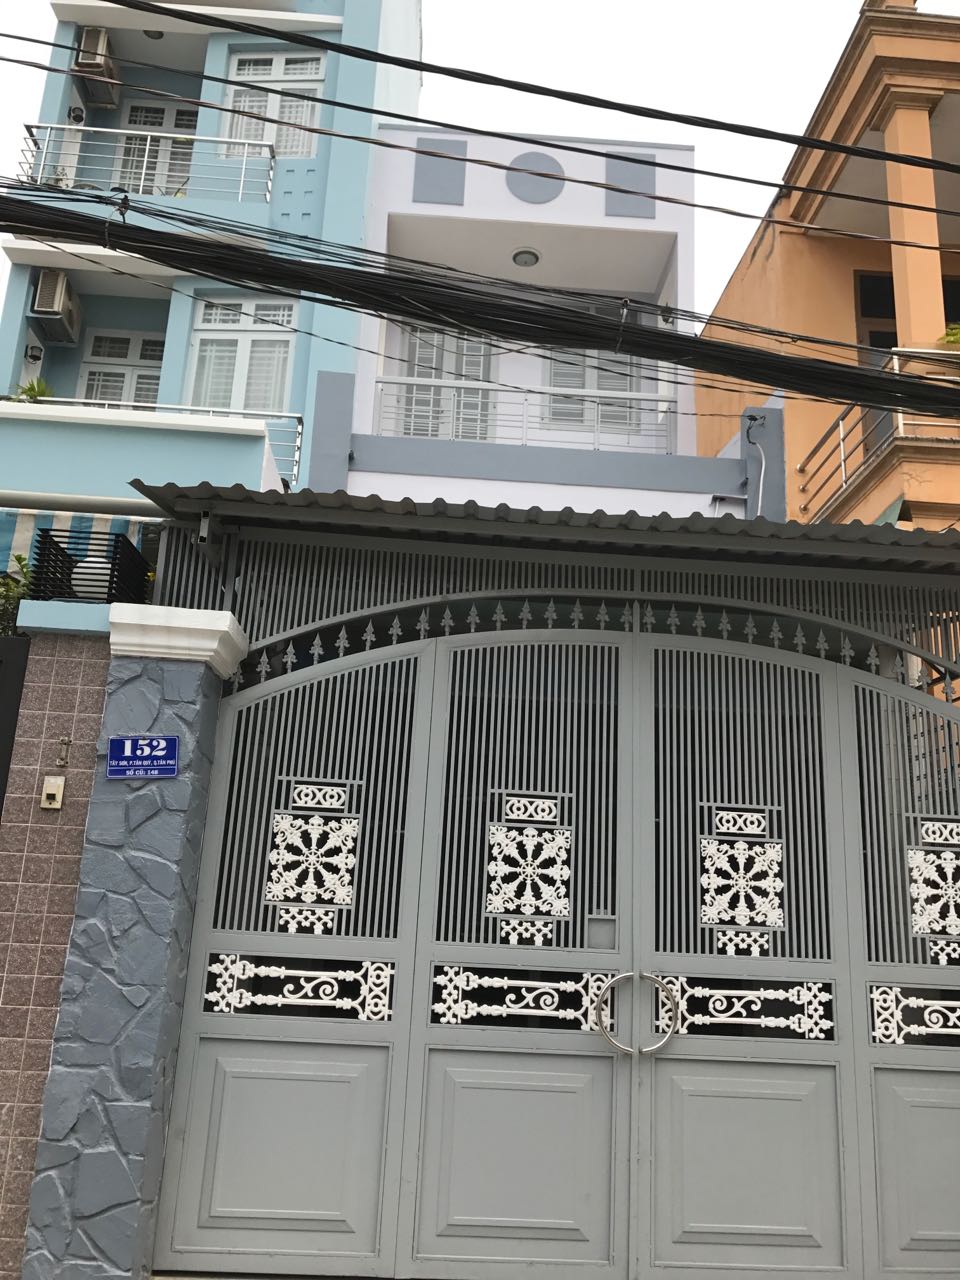 Bán nhà 152 Tây Sơn, P. Tân Quý, Q. Tân Phú